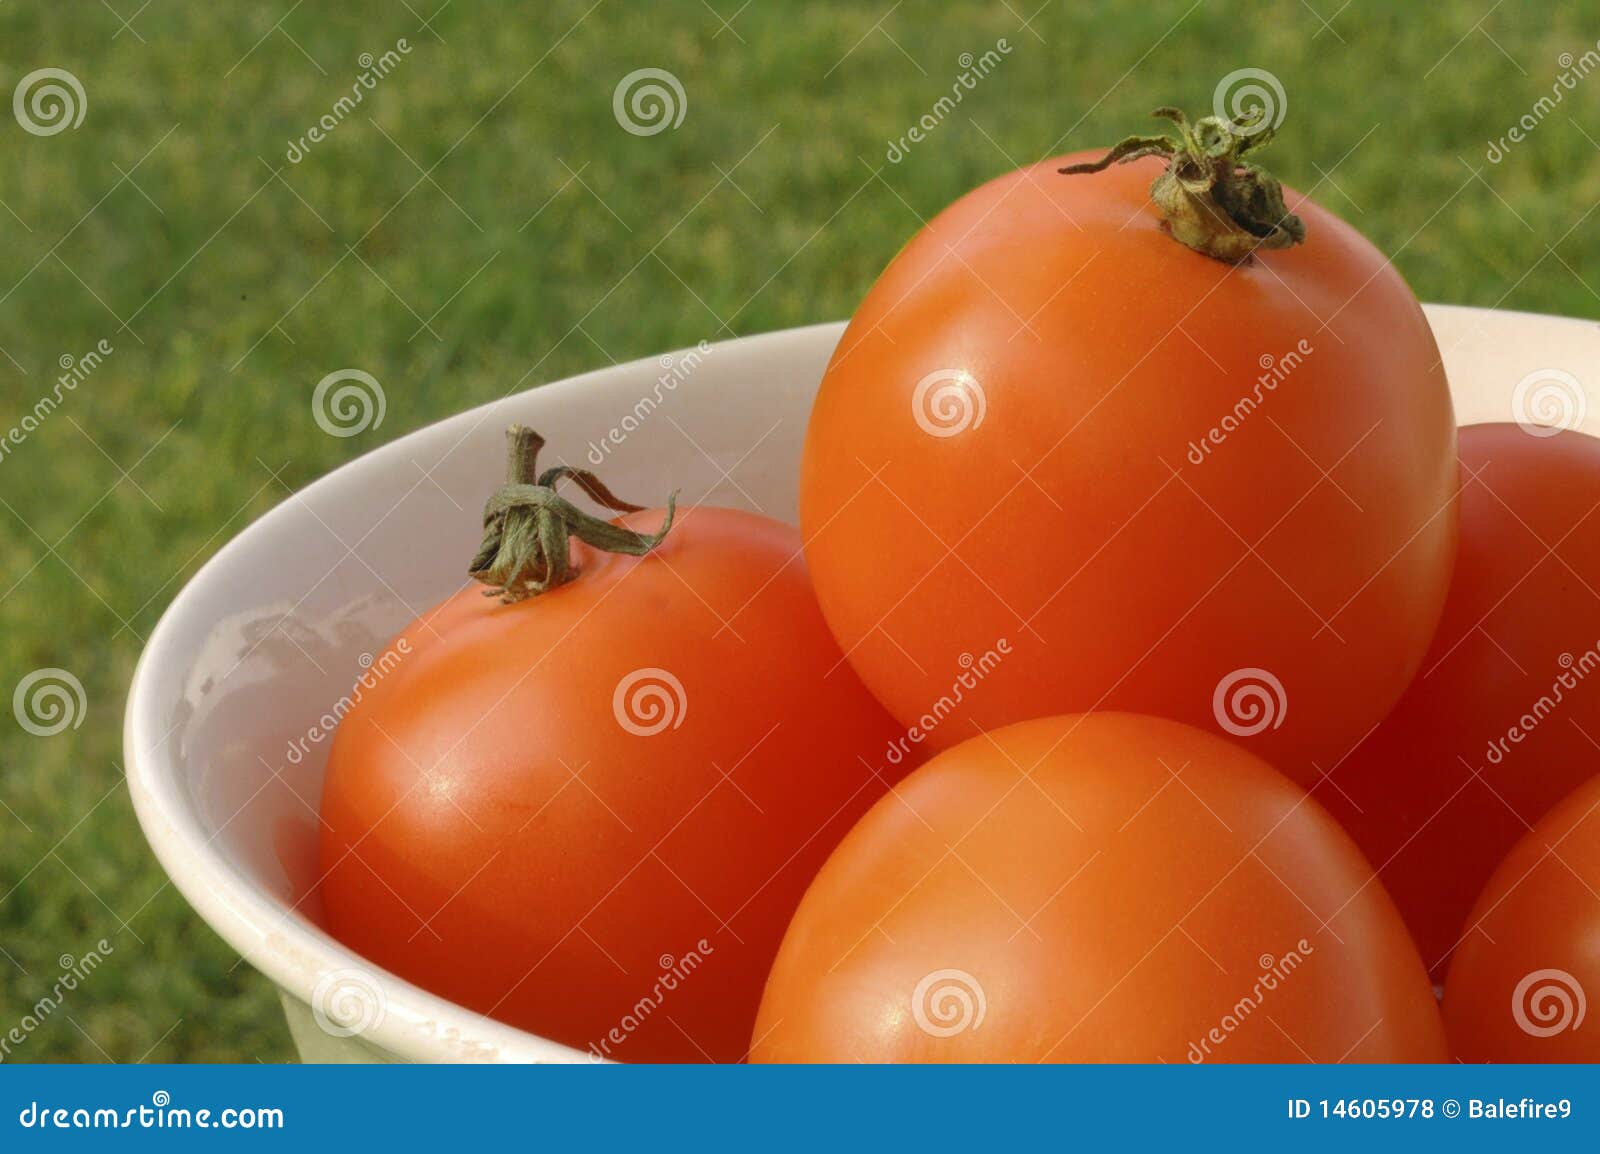 Ciotola Sunlit di pomodori a scarso tasso di acidità arancioni, con erba nella priorità bassa.